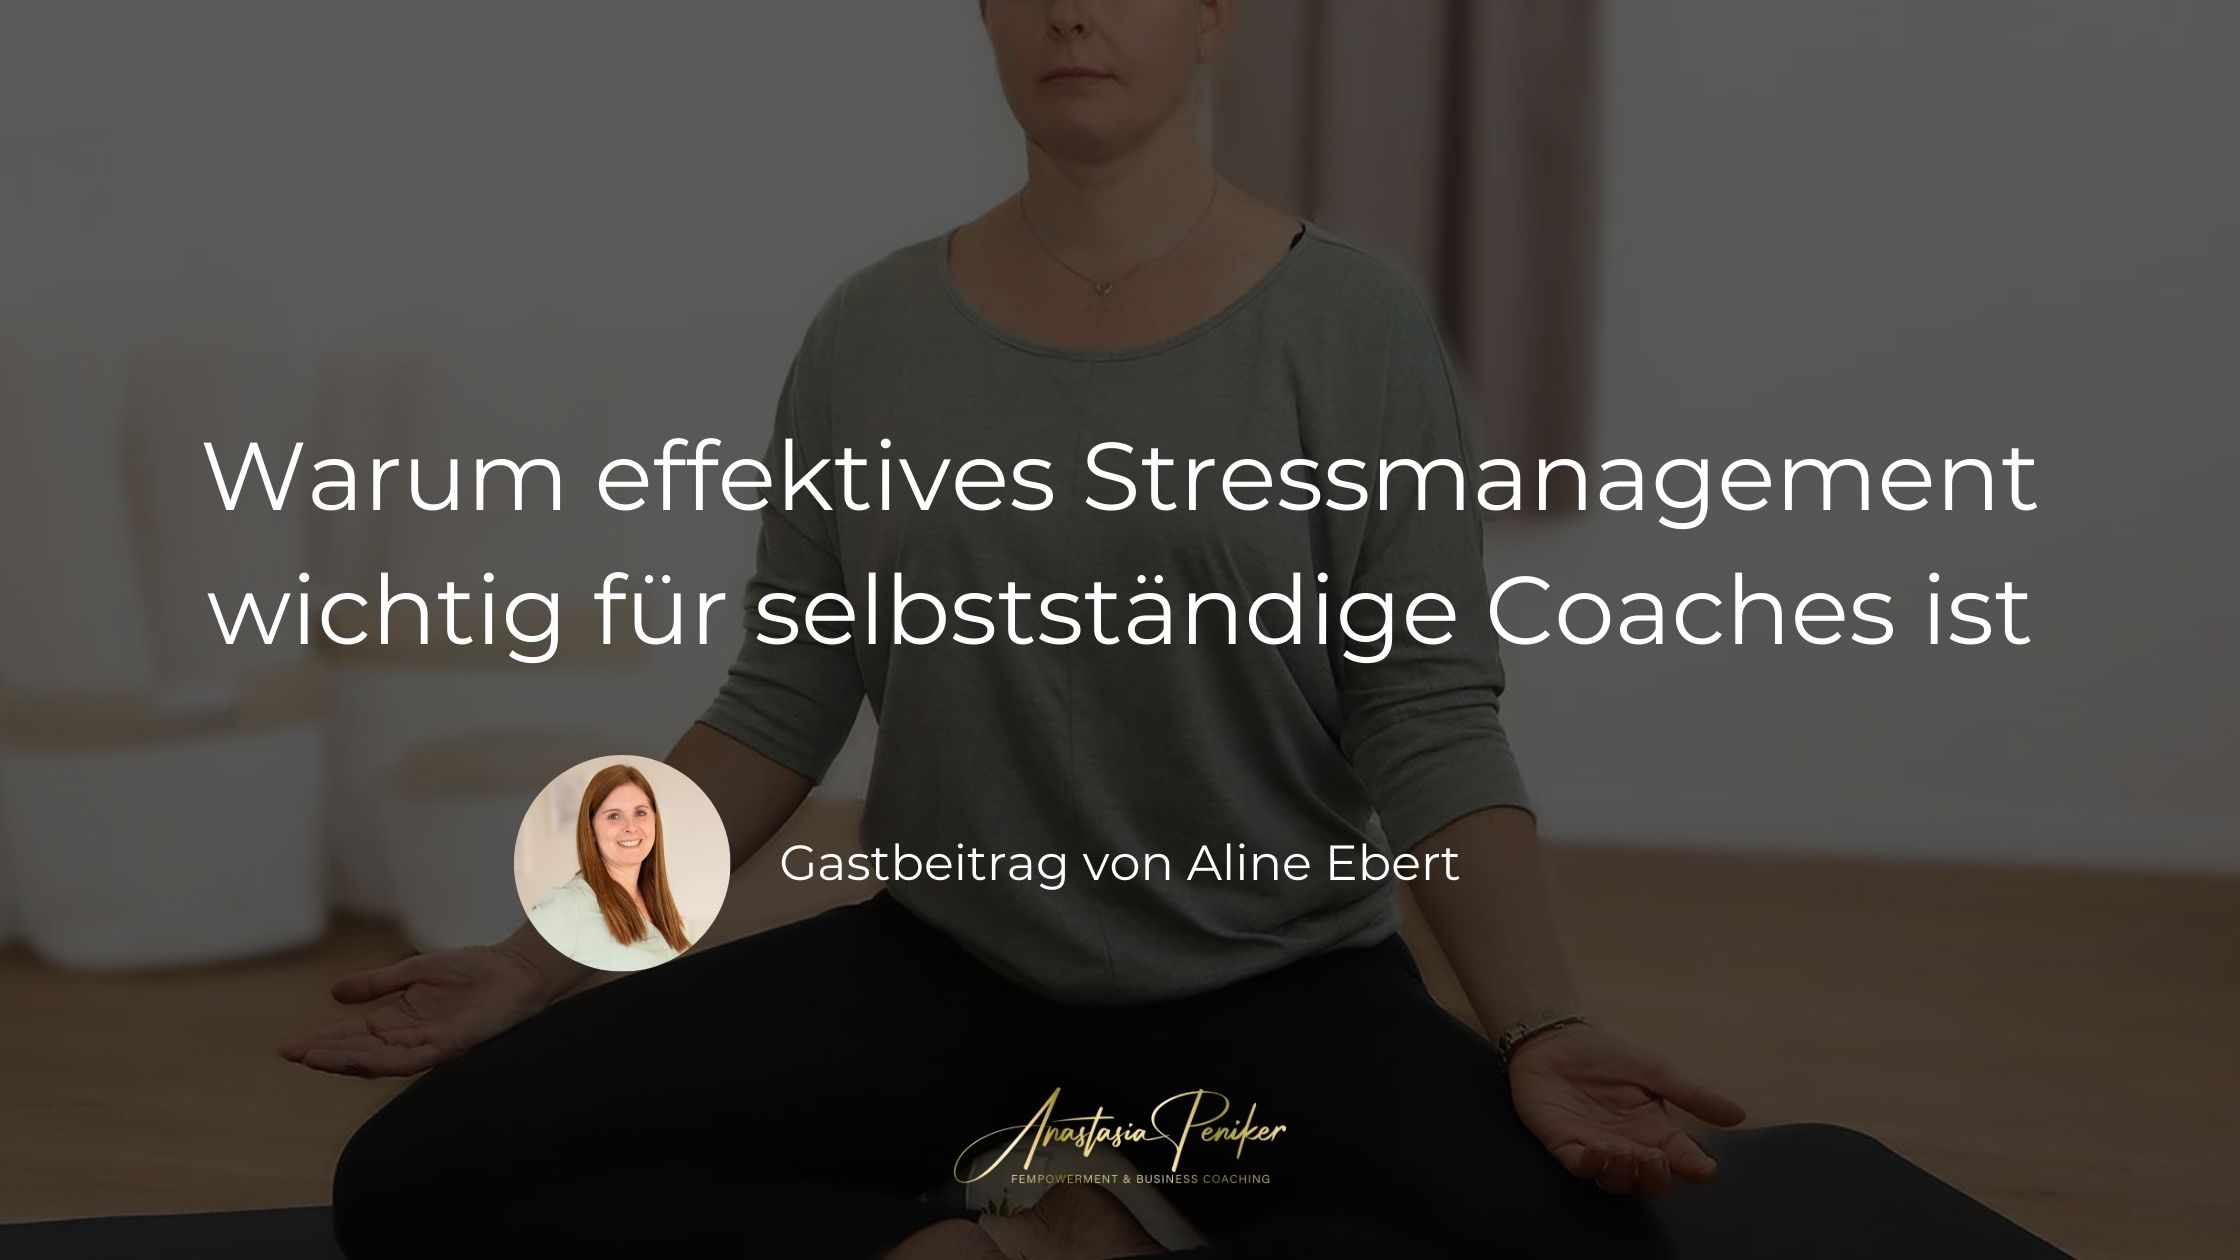 Gastbeitrag-von-Aline-Ebert-Warum-effektives-Stressmanagement-wichtig-fuer-selbststaendige-Coaches-ist